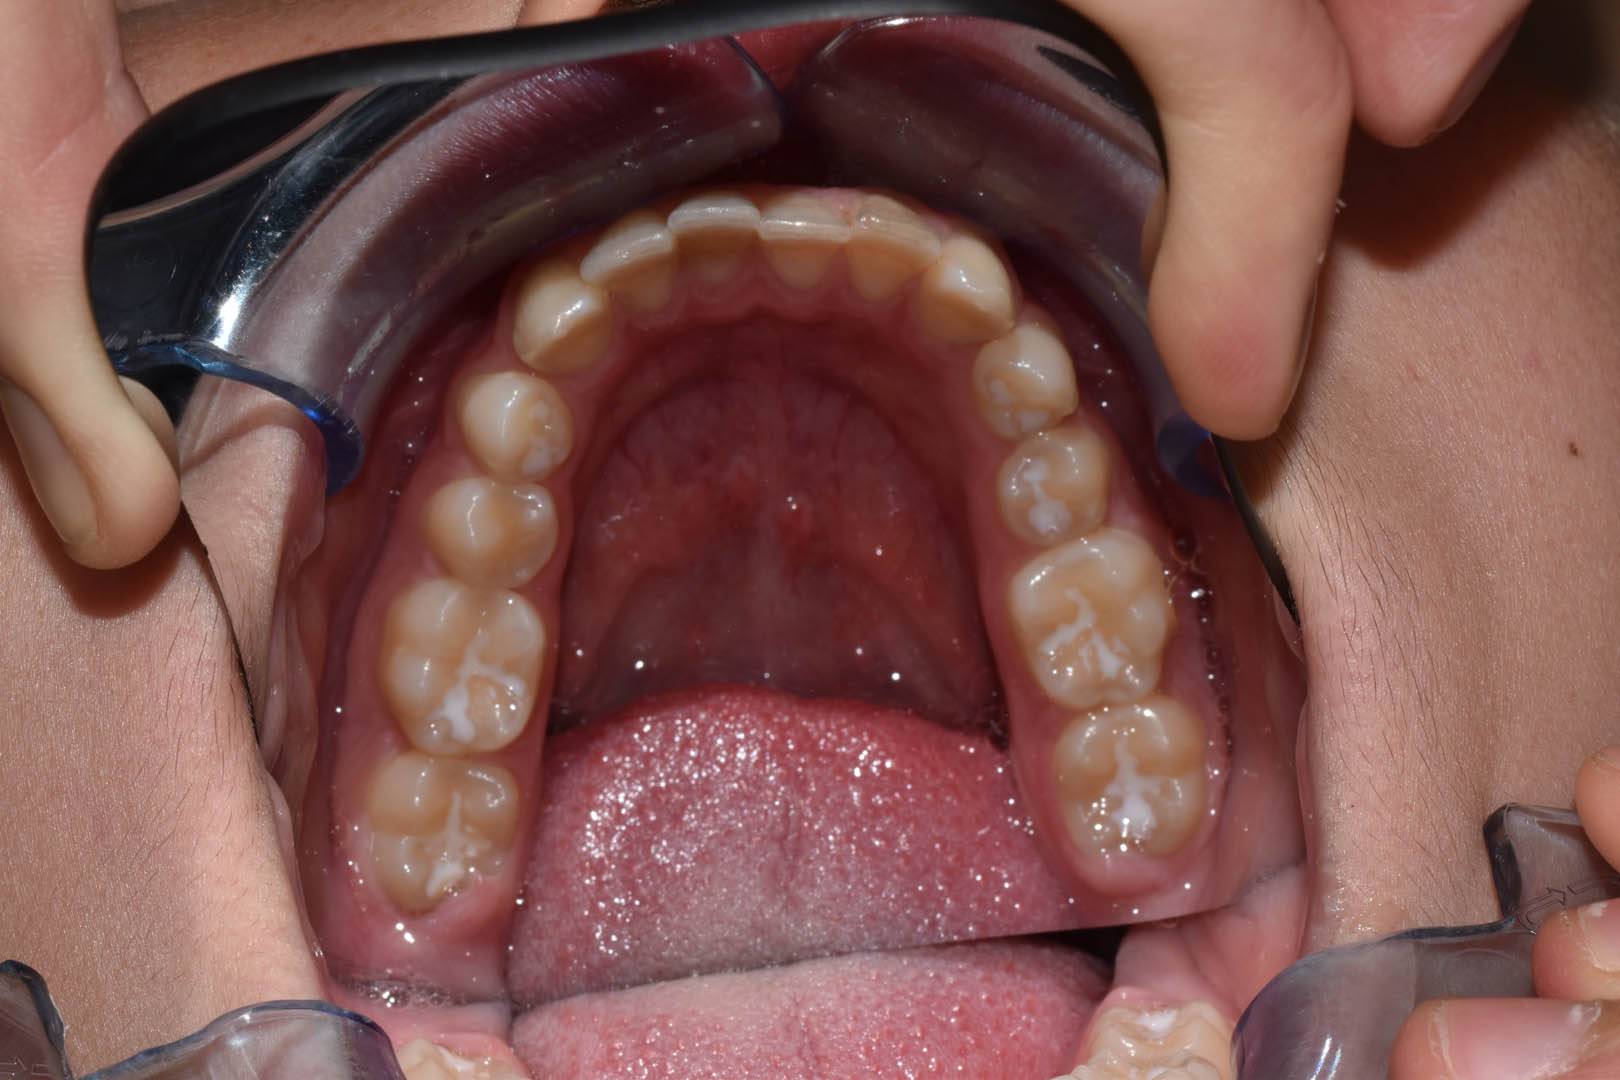 odontocentro-monza-brianza-ortodonzia-fissa- ( (5)